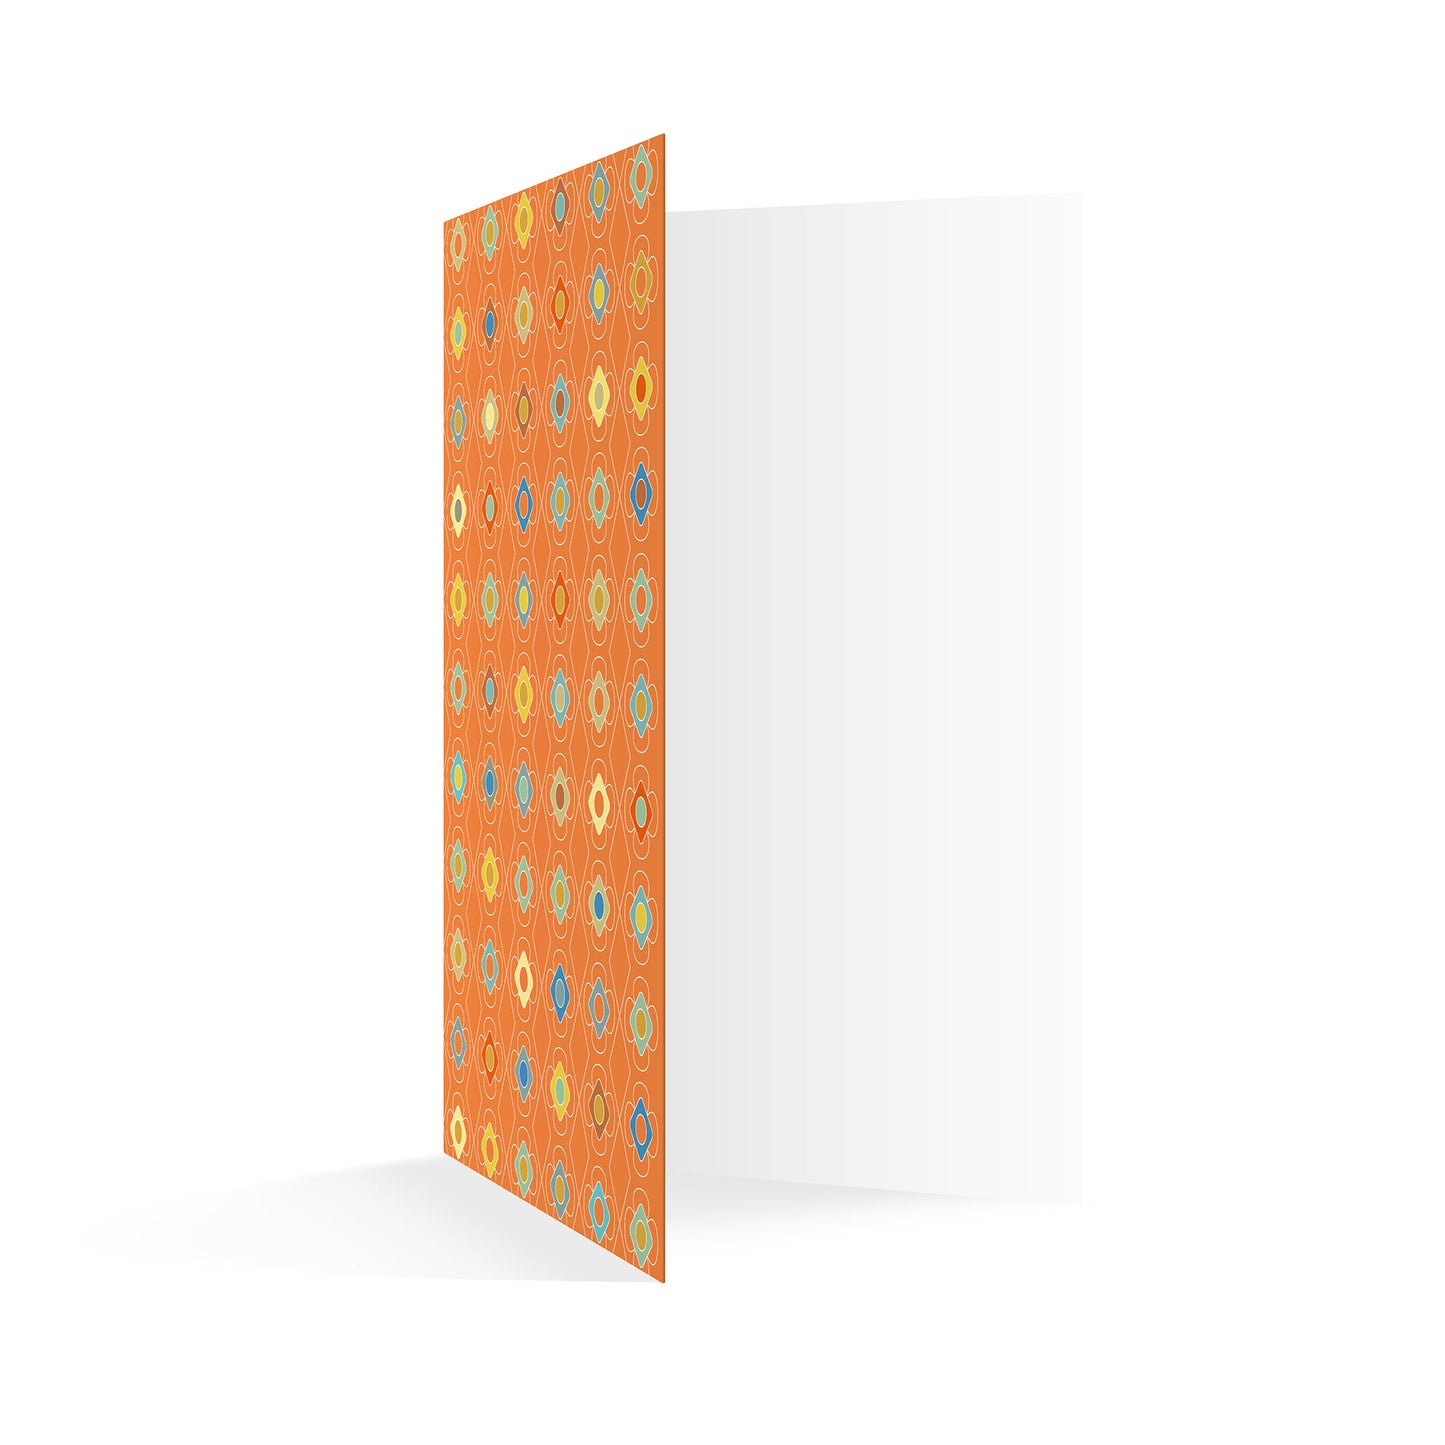 Productafbeelding wenskaart "kleur carrousel oranje" openstaand rechtop